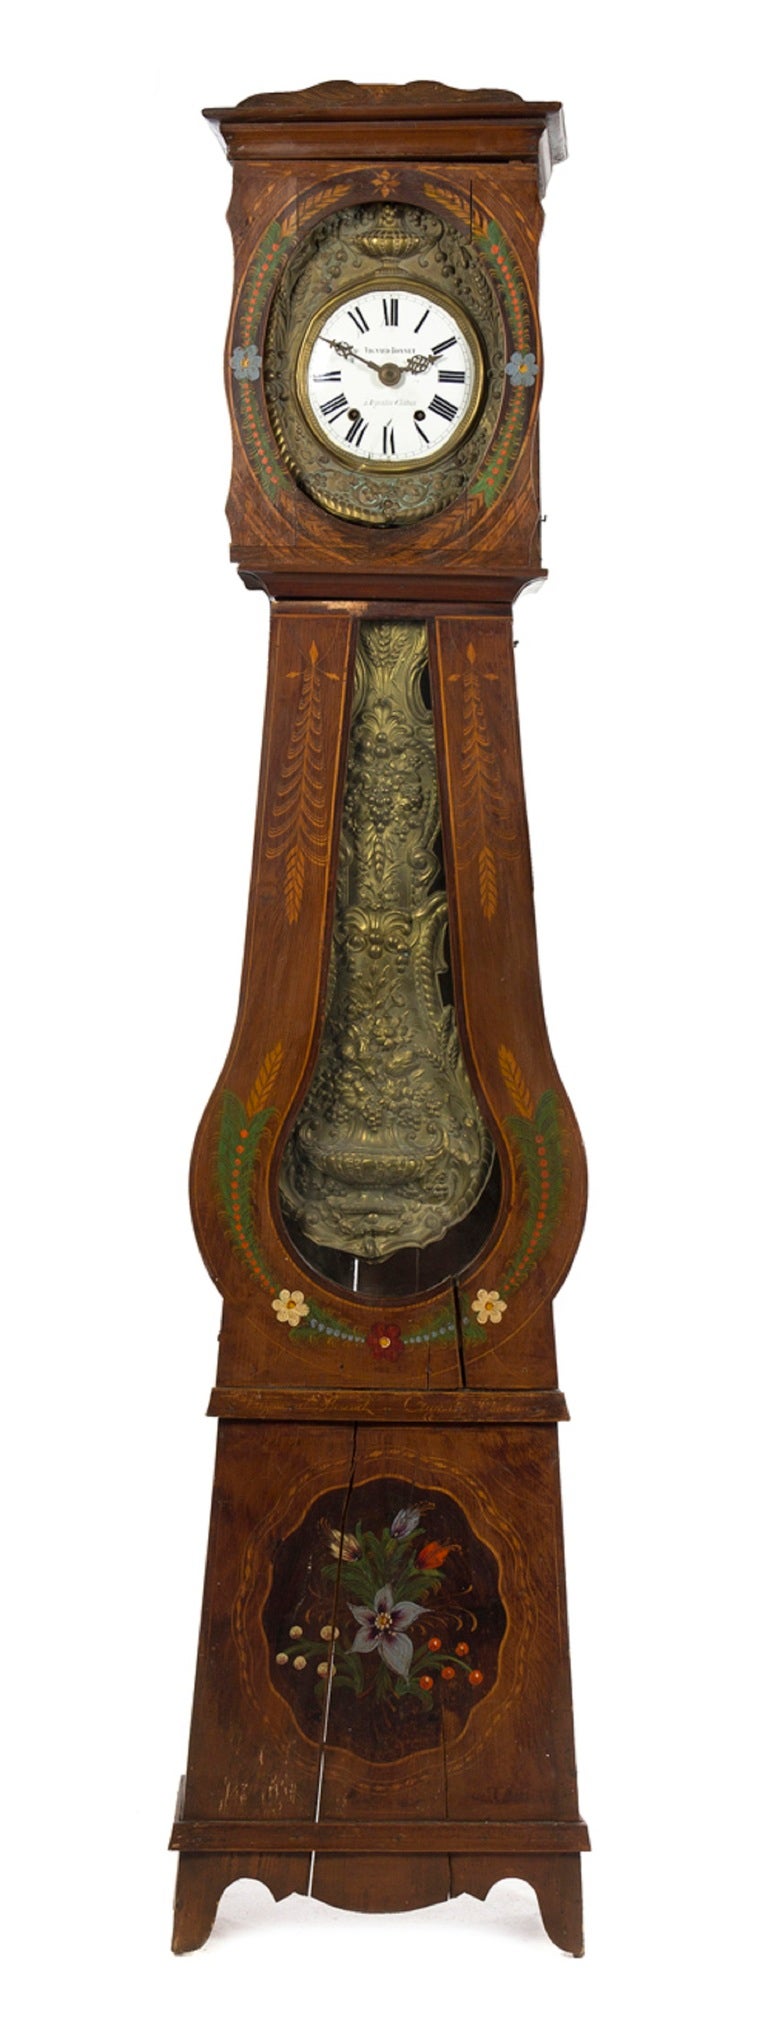 Pendule Morbier du 19ème siècle, Bonnet Vignaud, avec un cadran circulaire à chiffres romains et un pendule en laiton pressé, le boîtier avec une décoration florale peinte.